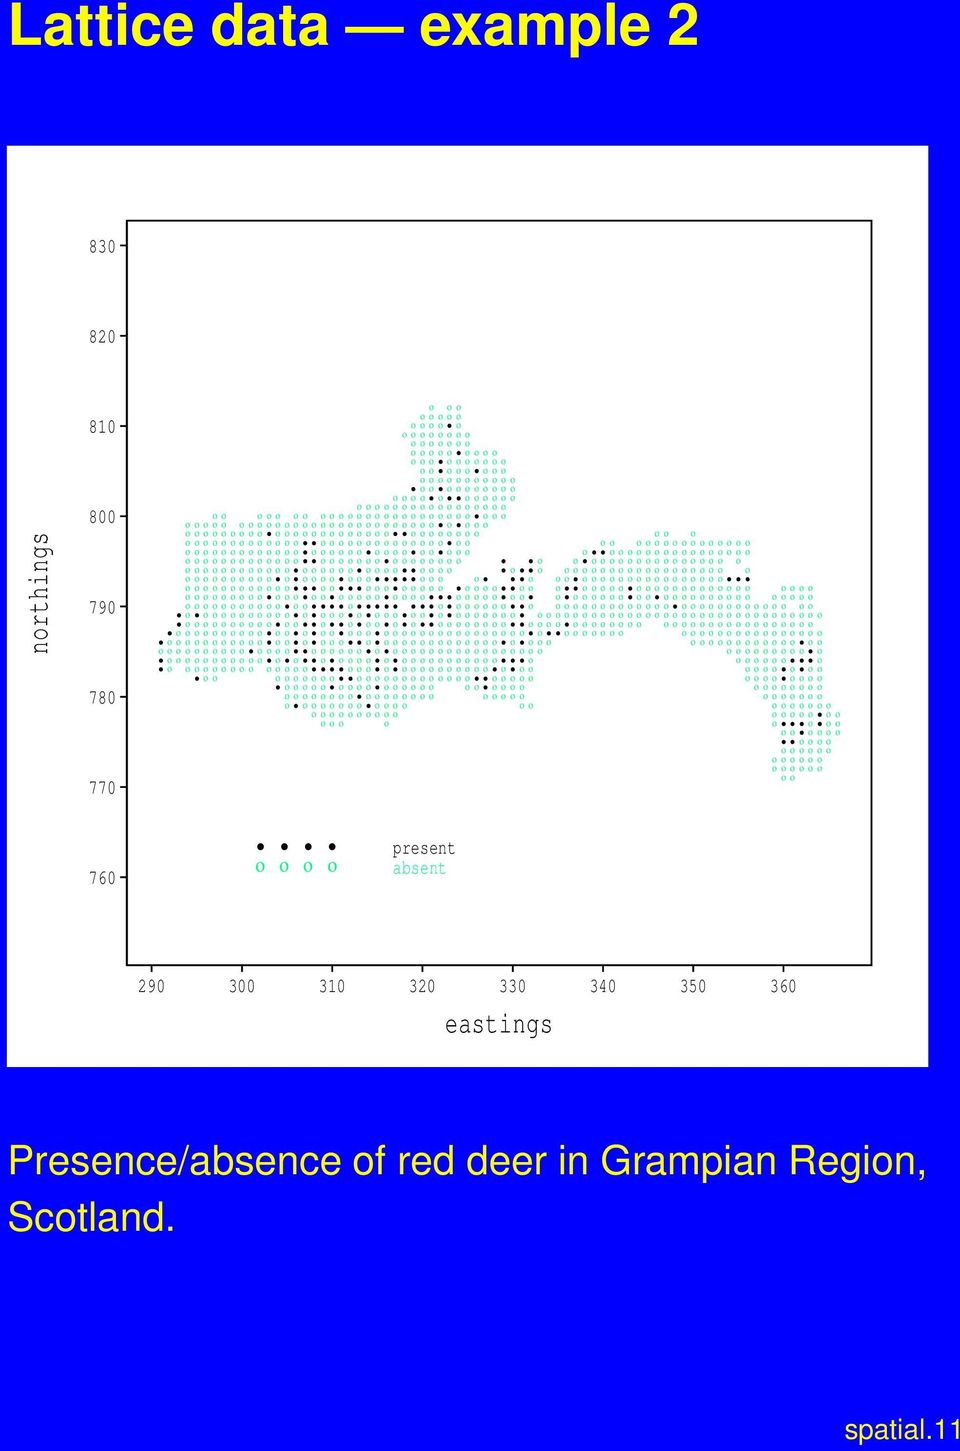 ο ο ο ο ο ο ο ο ο ο ο ο ο ο ο ο ο ο 760 present ο ο ο ο absent 290 300 310 320 330 340 350 360 eastings Presence/absence of red deer in Grampian Region, Scotland. spatial.11